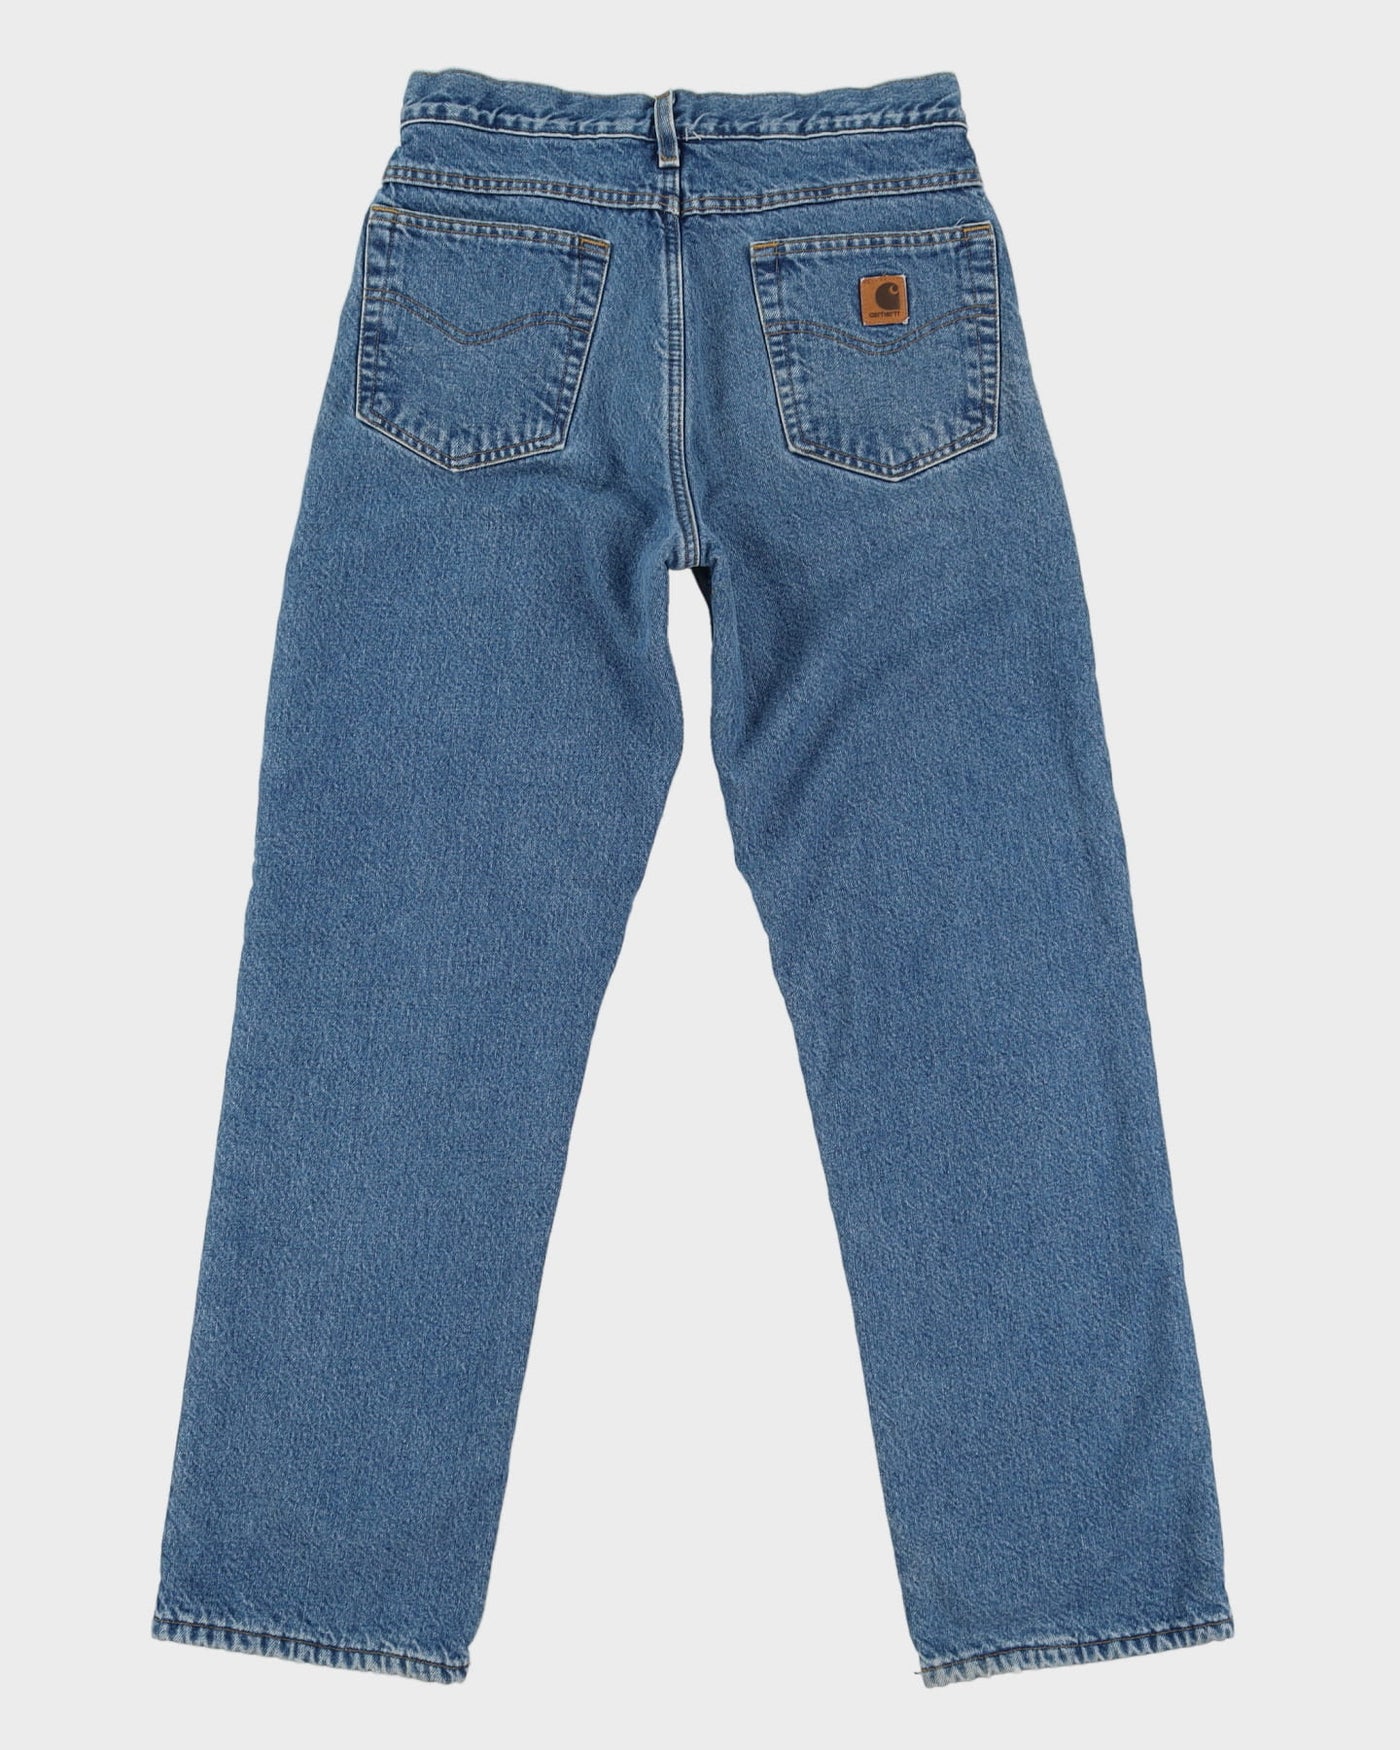 Carhartt Fleece Lined Blue Jeans - W31 L33